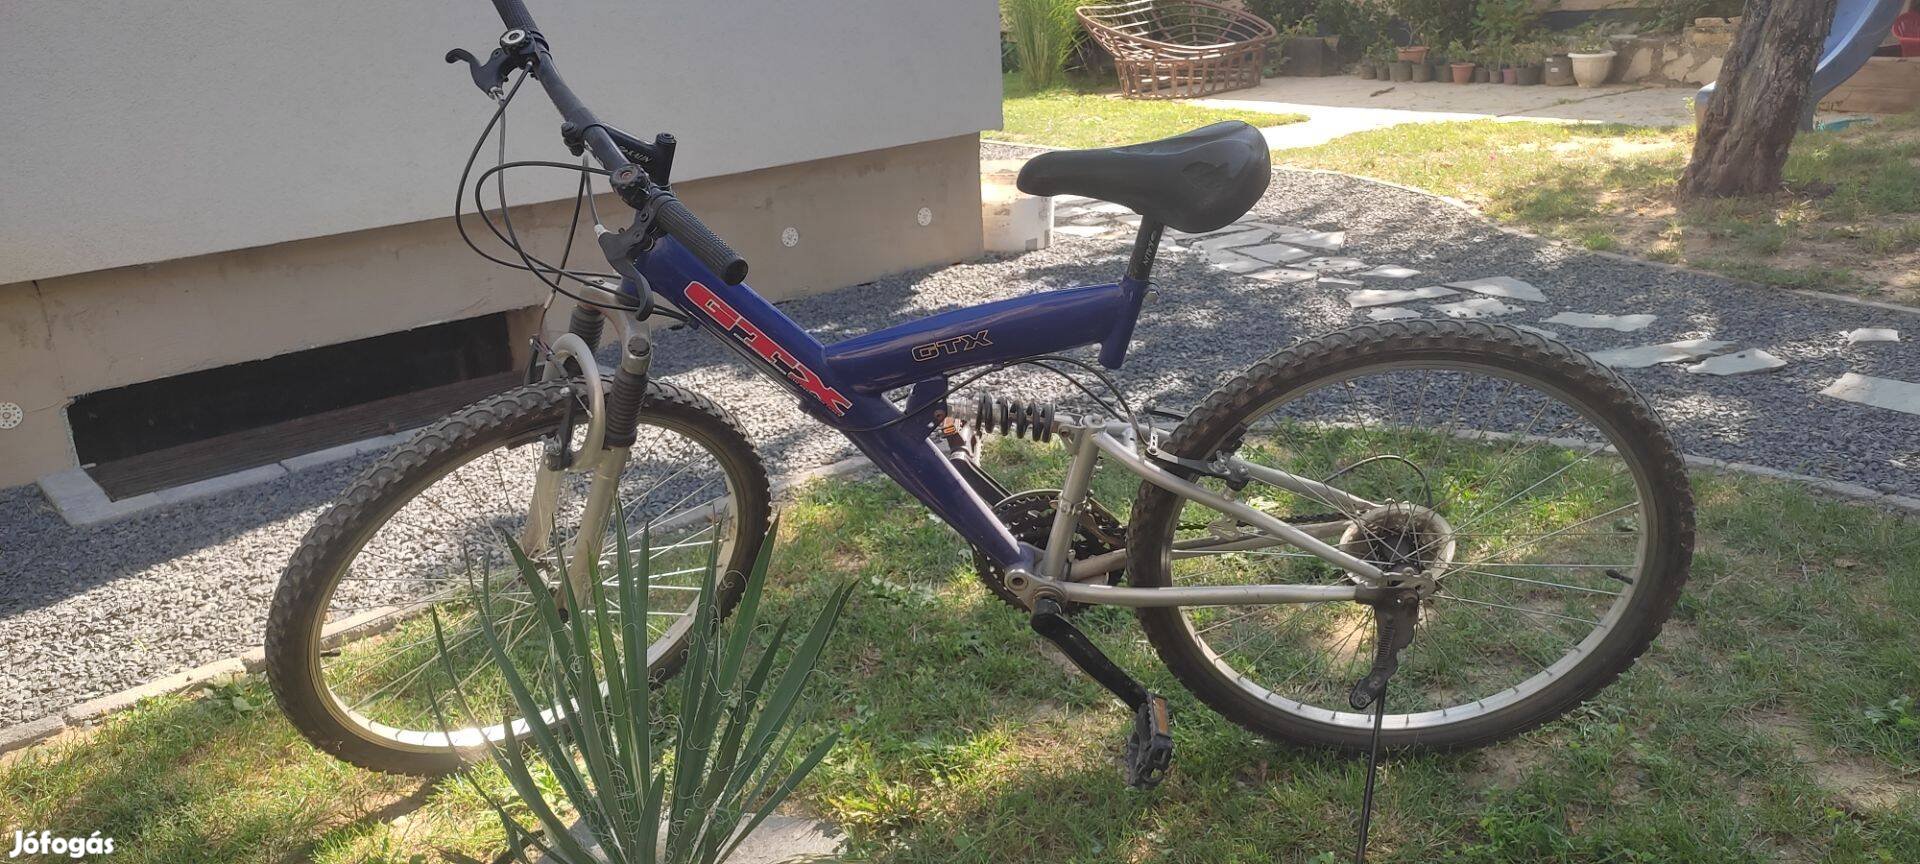 Bicikli, kerékpár (26-os?)